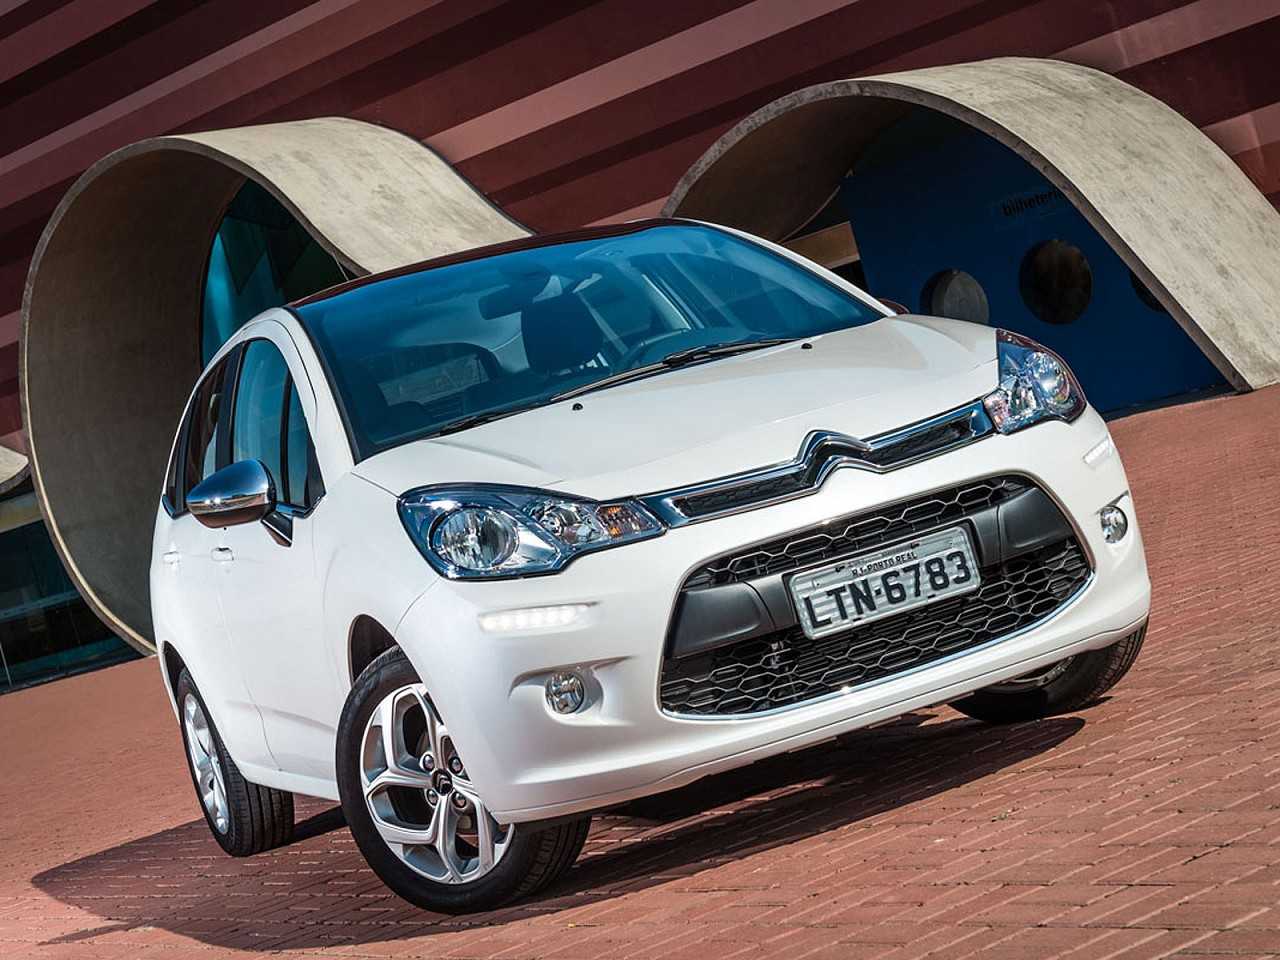 Ajuda para escolher o primeiro carro: Toyota Etios ou Citroën C3, ambos automáticos?